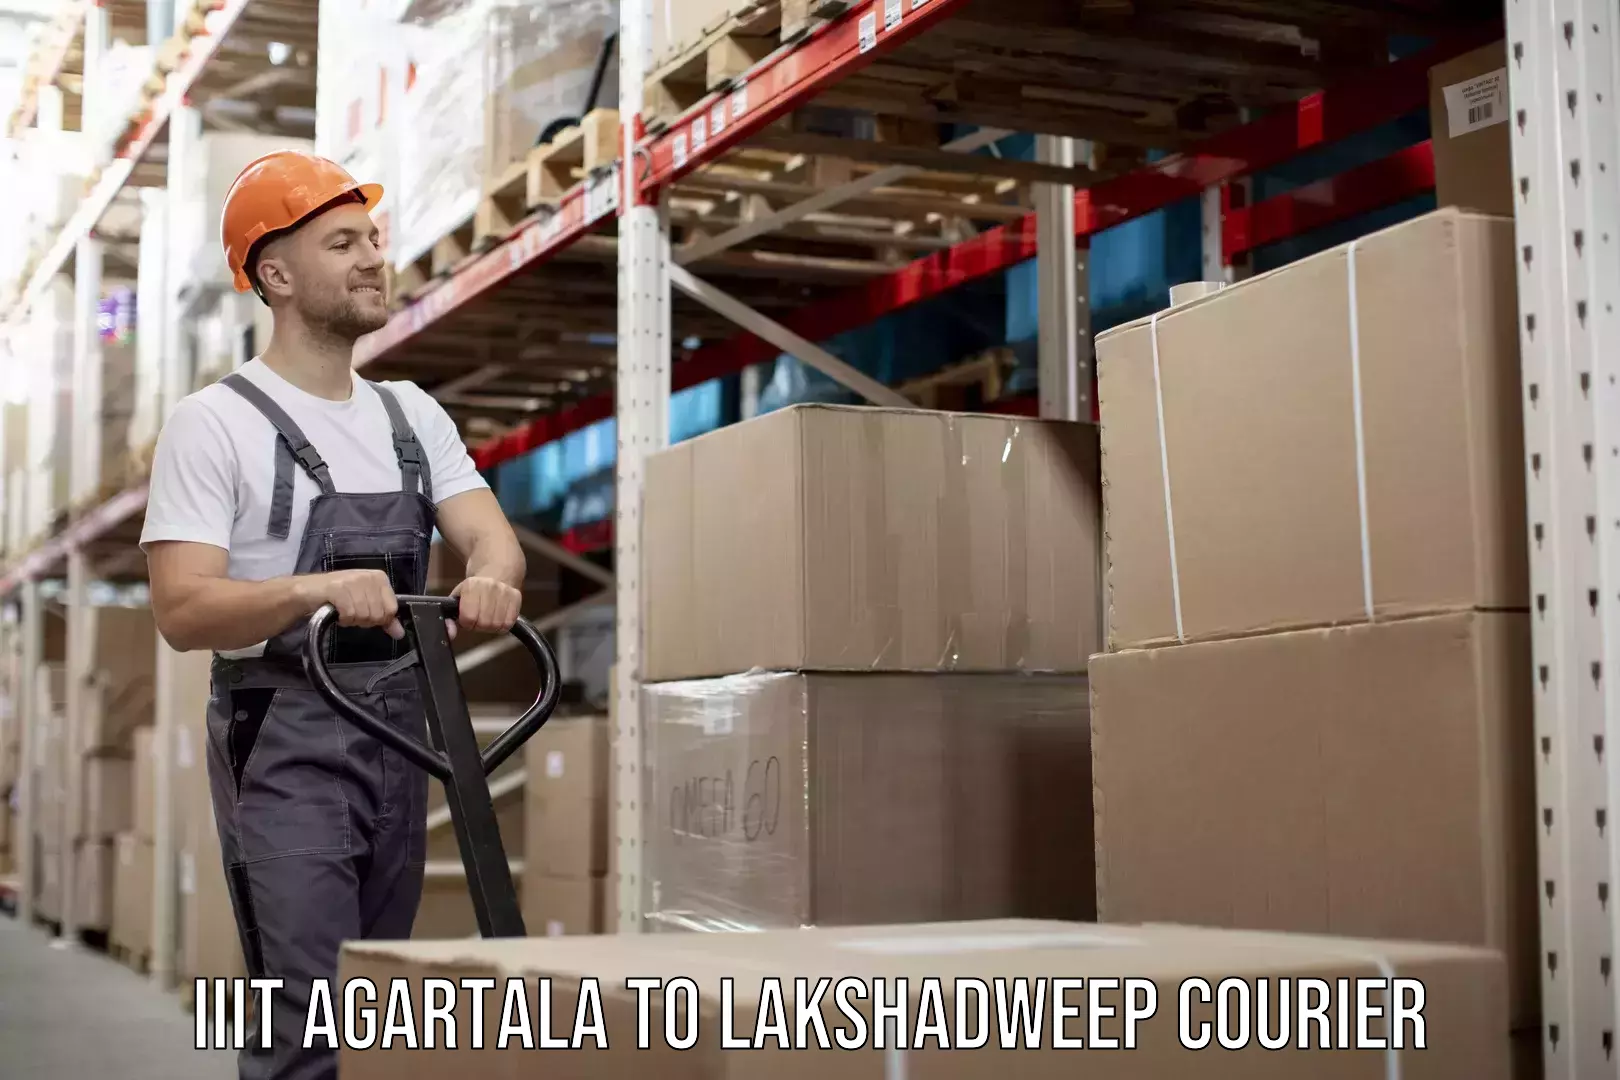 Advanced shipping network IIIT Agartala to Lakshadweep